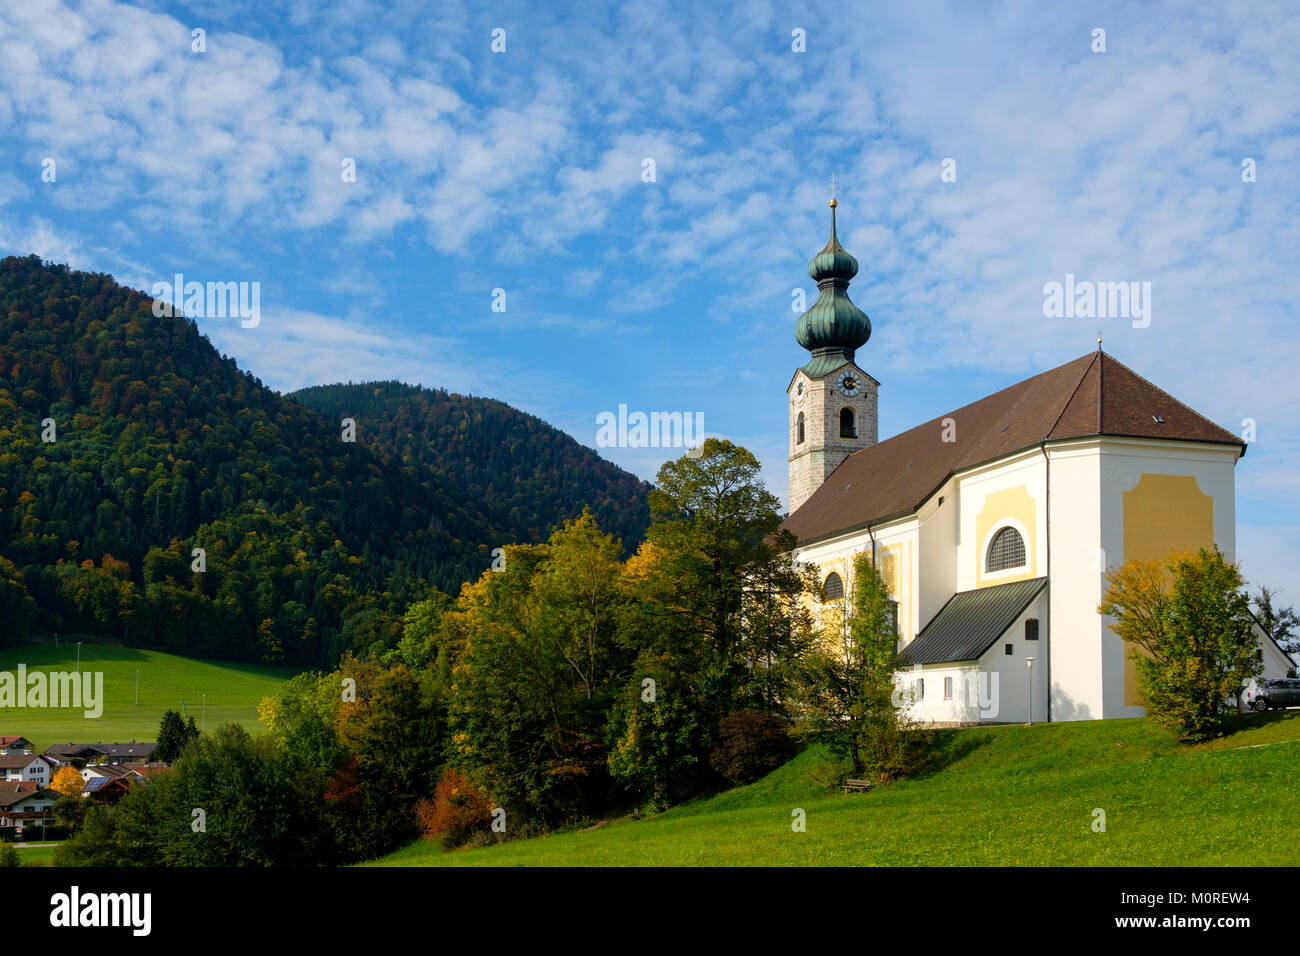 Katholische Pfarrkirche St. Georg von 1758, Ruhpolding, Chiemgau, Oberbayern, Bayern, Deutschland Stock Photo